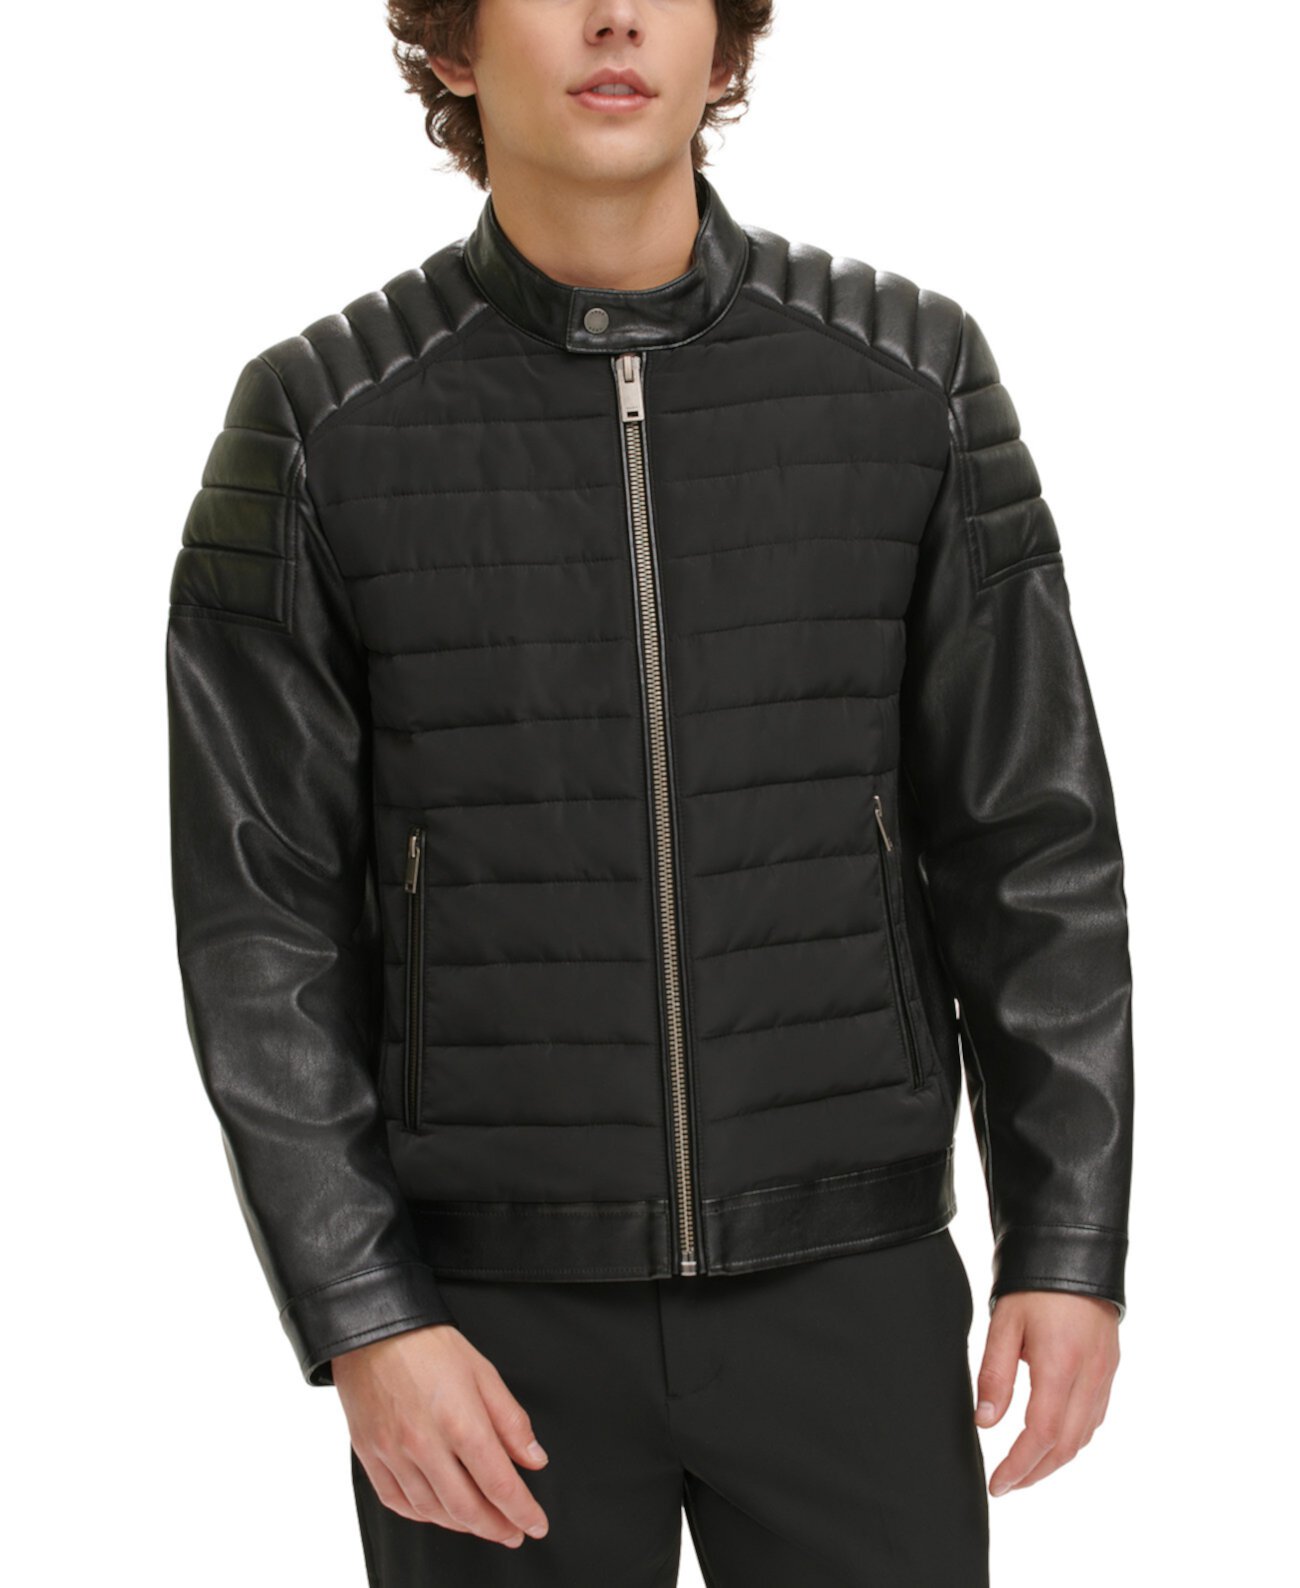 Стеганая мужская куртка Racer из смешанной техники, созданная для Macy's DKNY